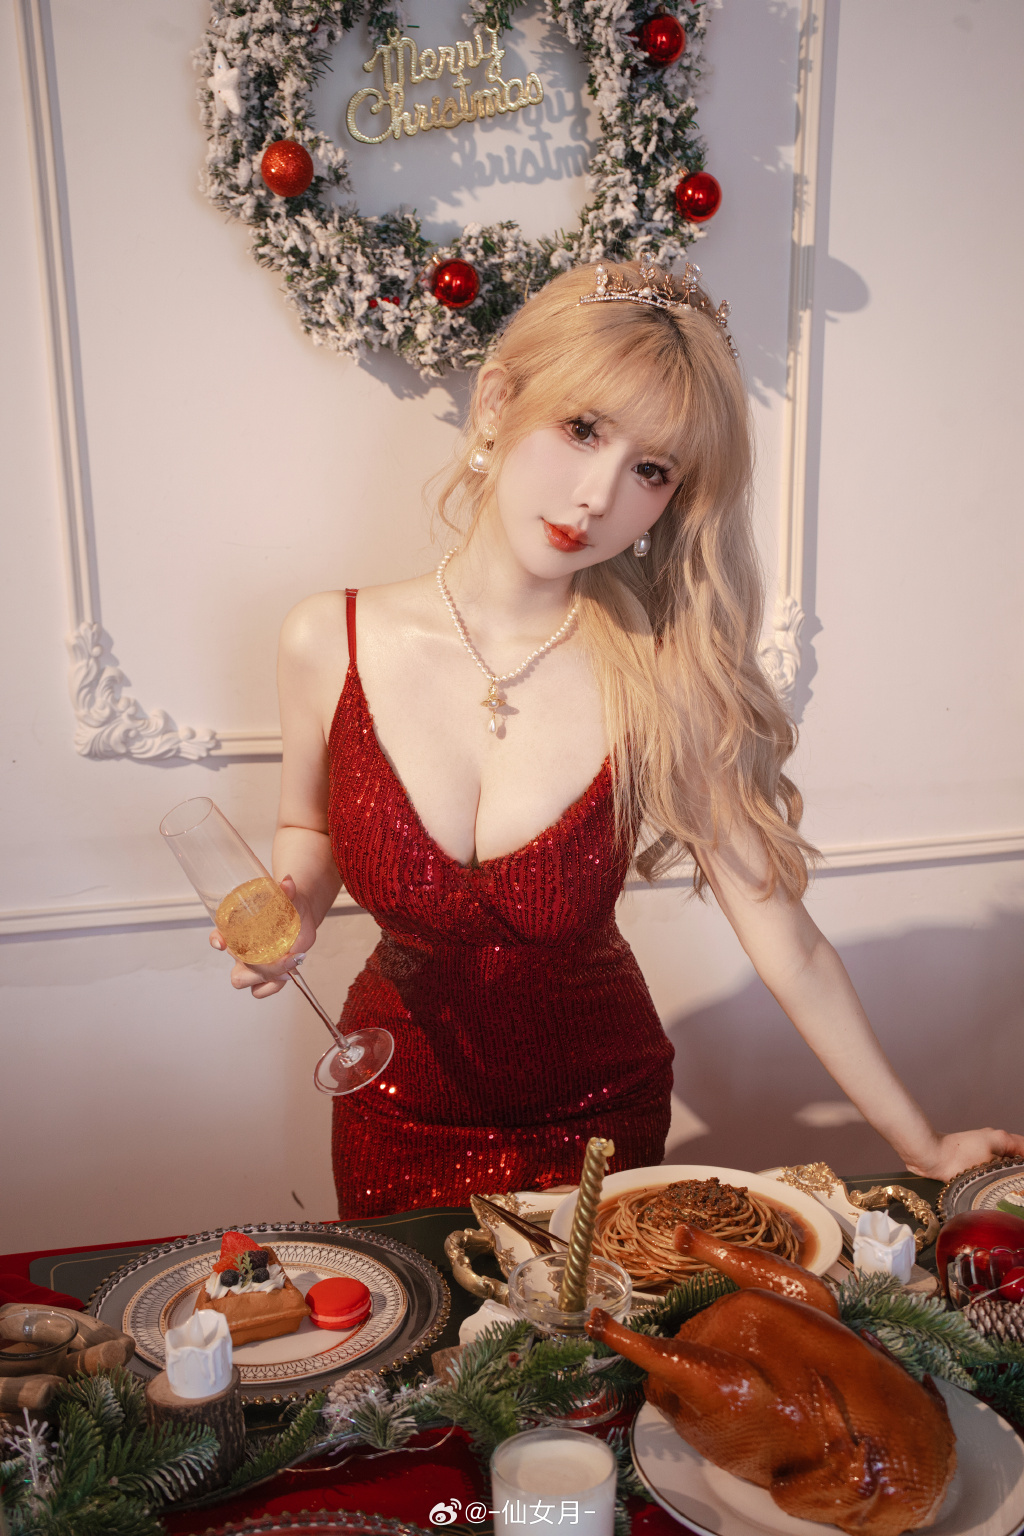 🍷𝑴𝒆𝒓𝒓𝒚 𝑪𝒉𝒓𝒊𝒔𝒕𝒎𝒂𝒔 .🧸 圣诞来杯热红酒吧🍷 少女写真 圣诞节@-仙女月- 摄影-第8张